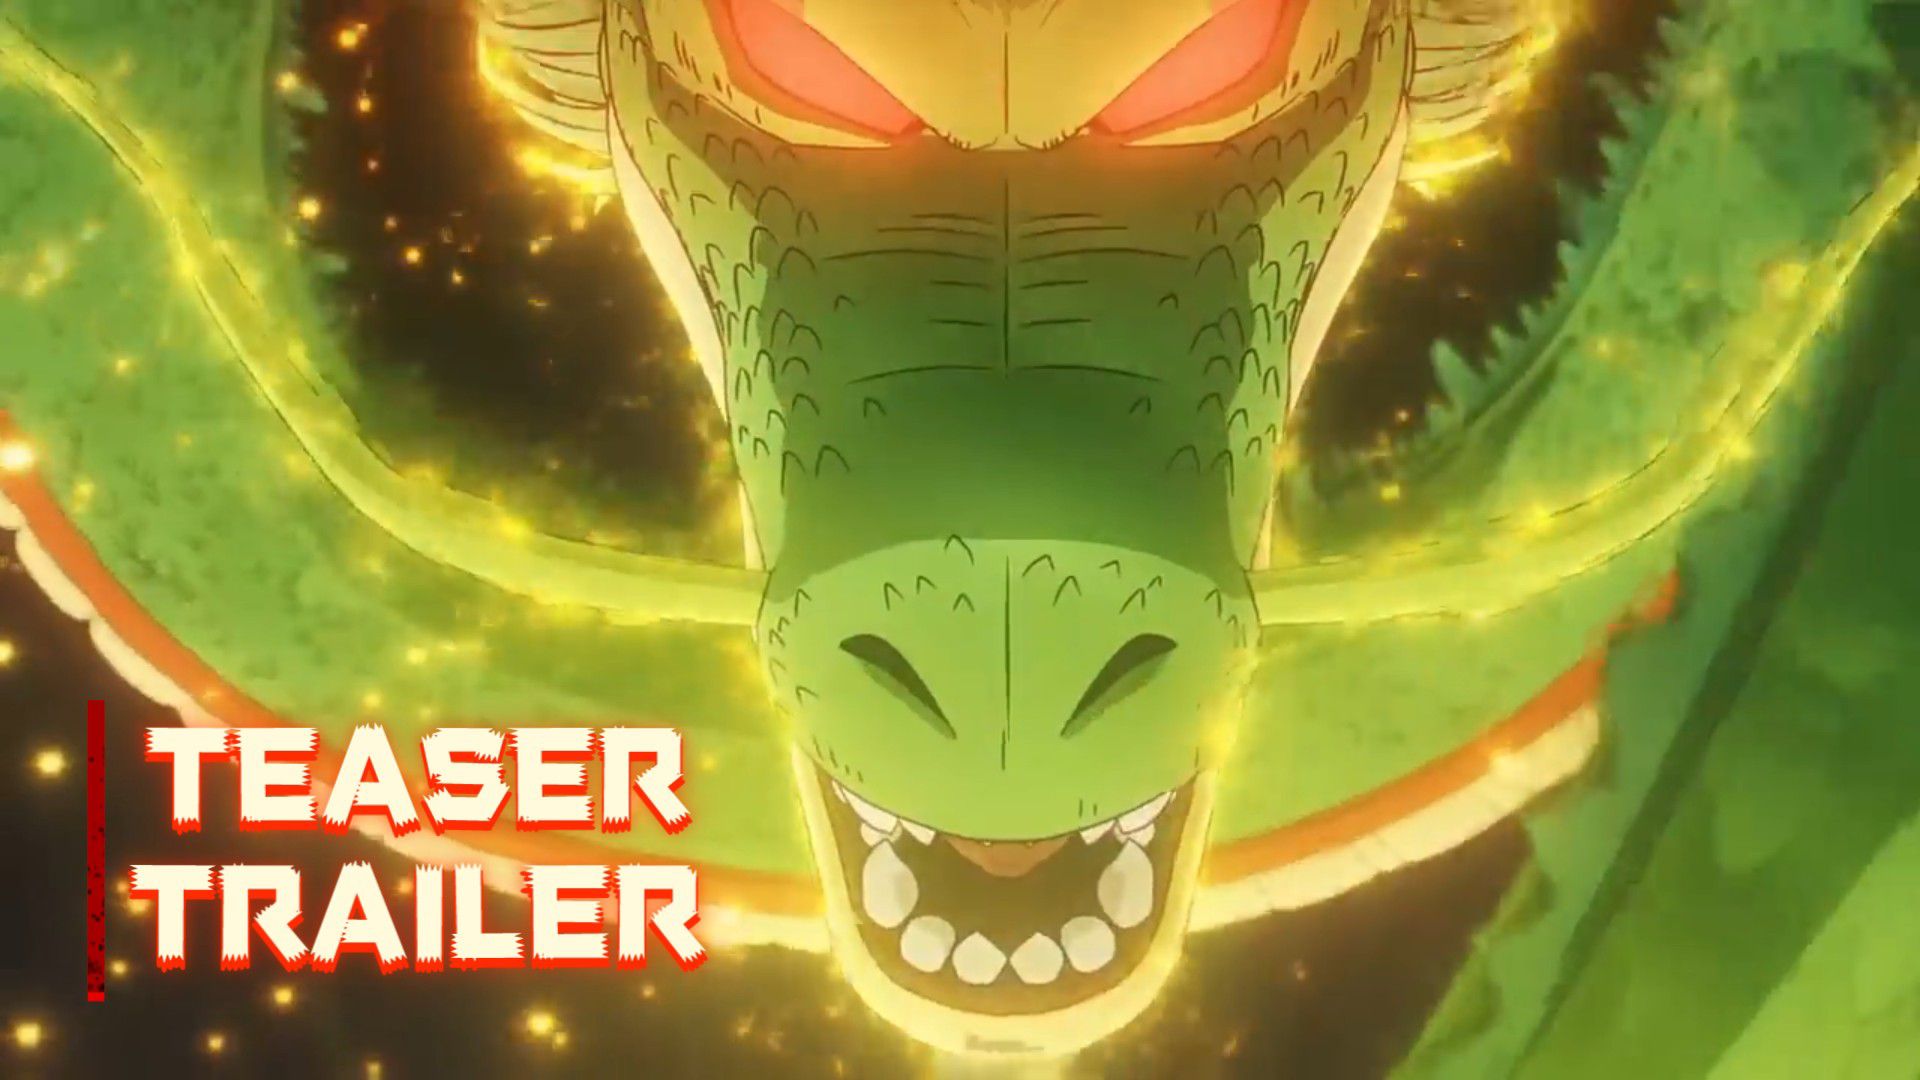 Dragon Ball DAIMA” Teaser Trailer / Fall 2024 